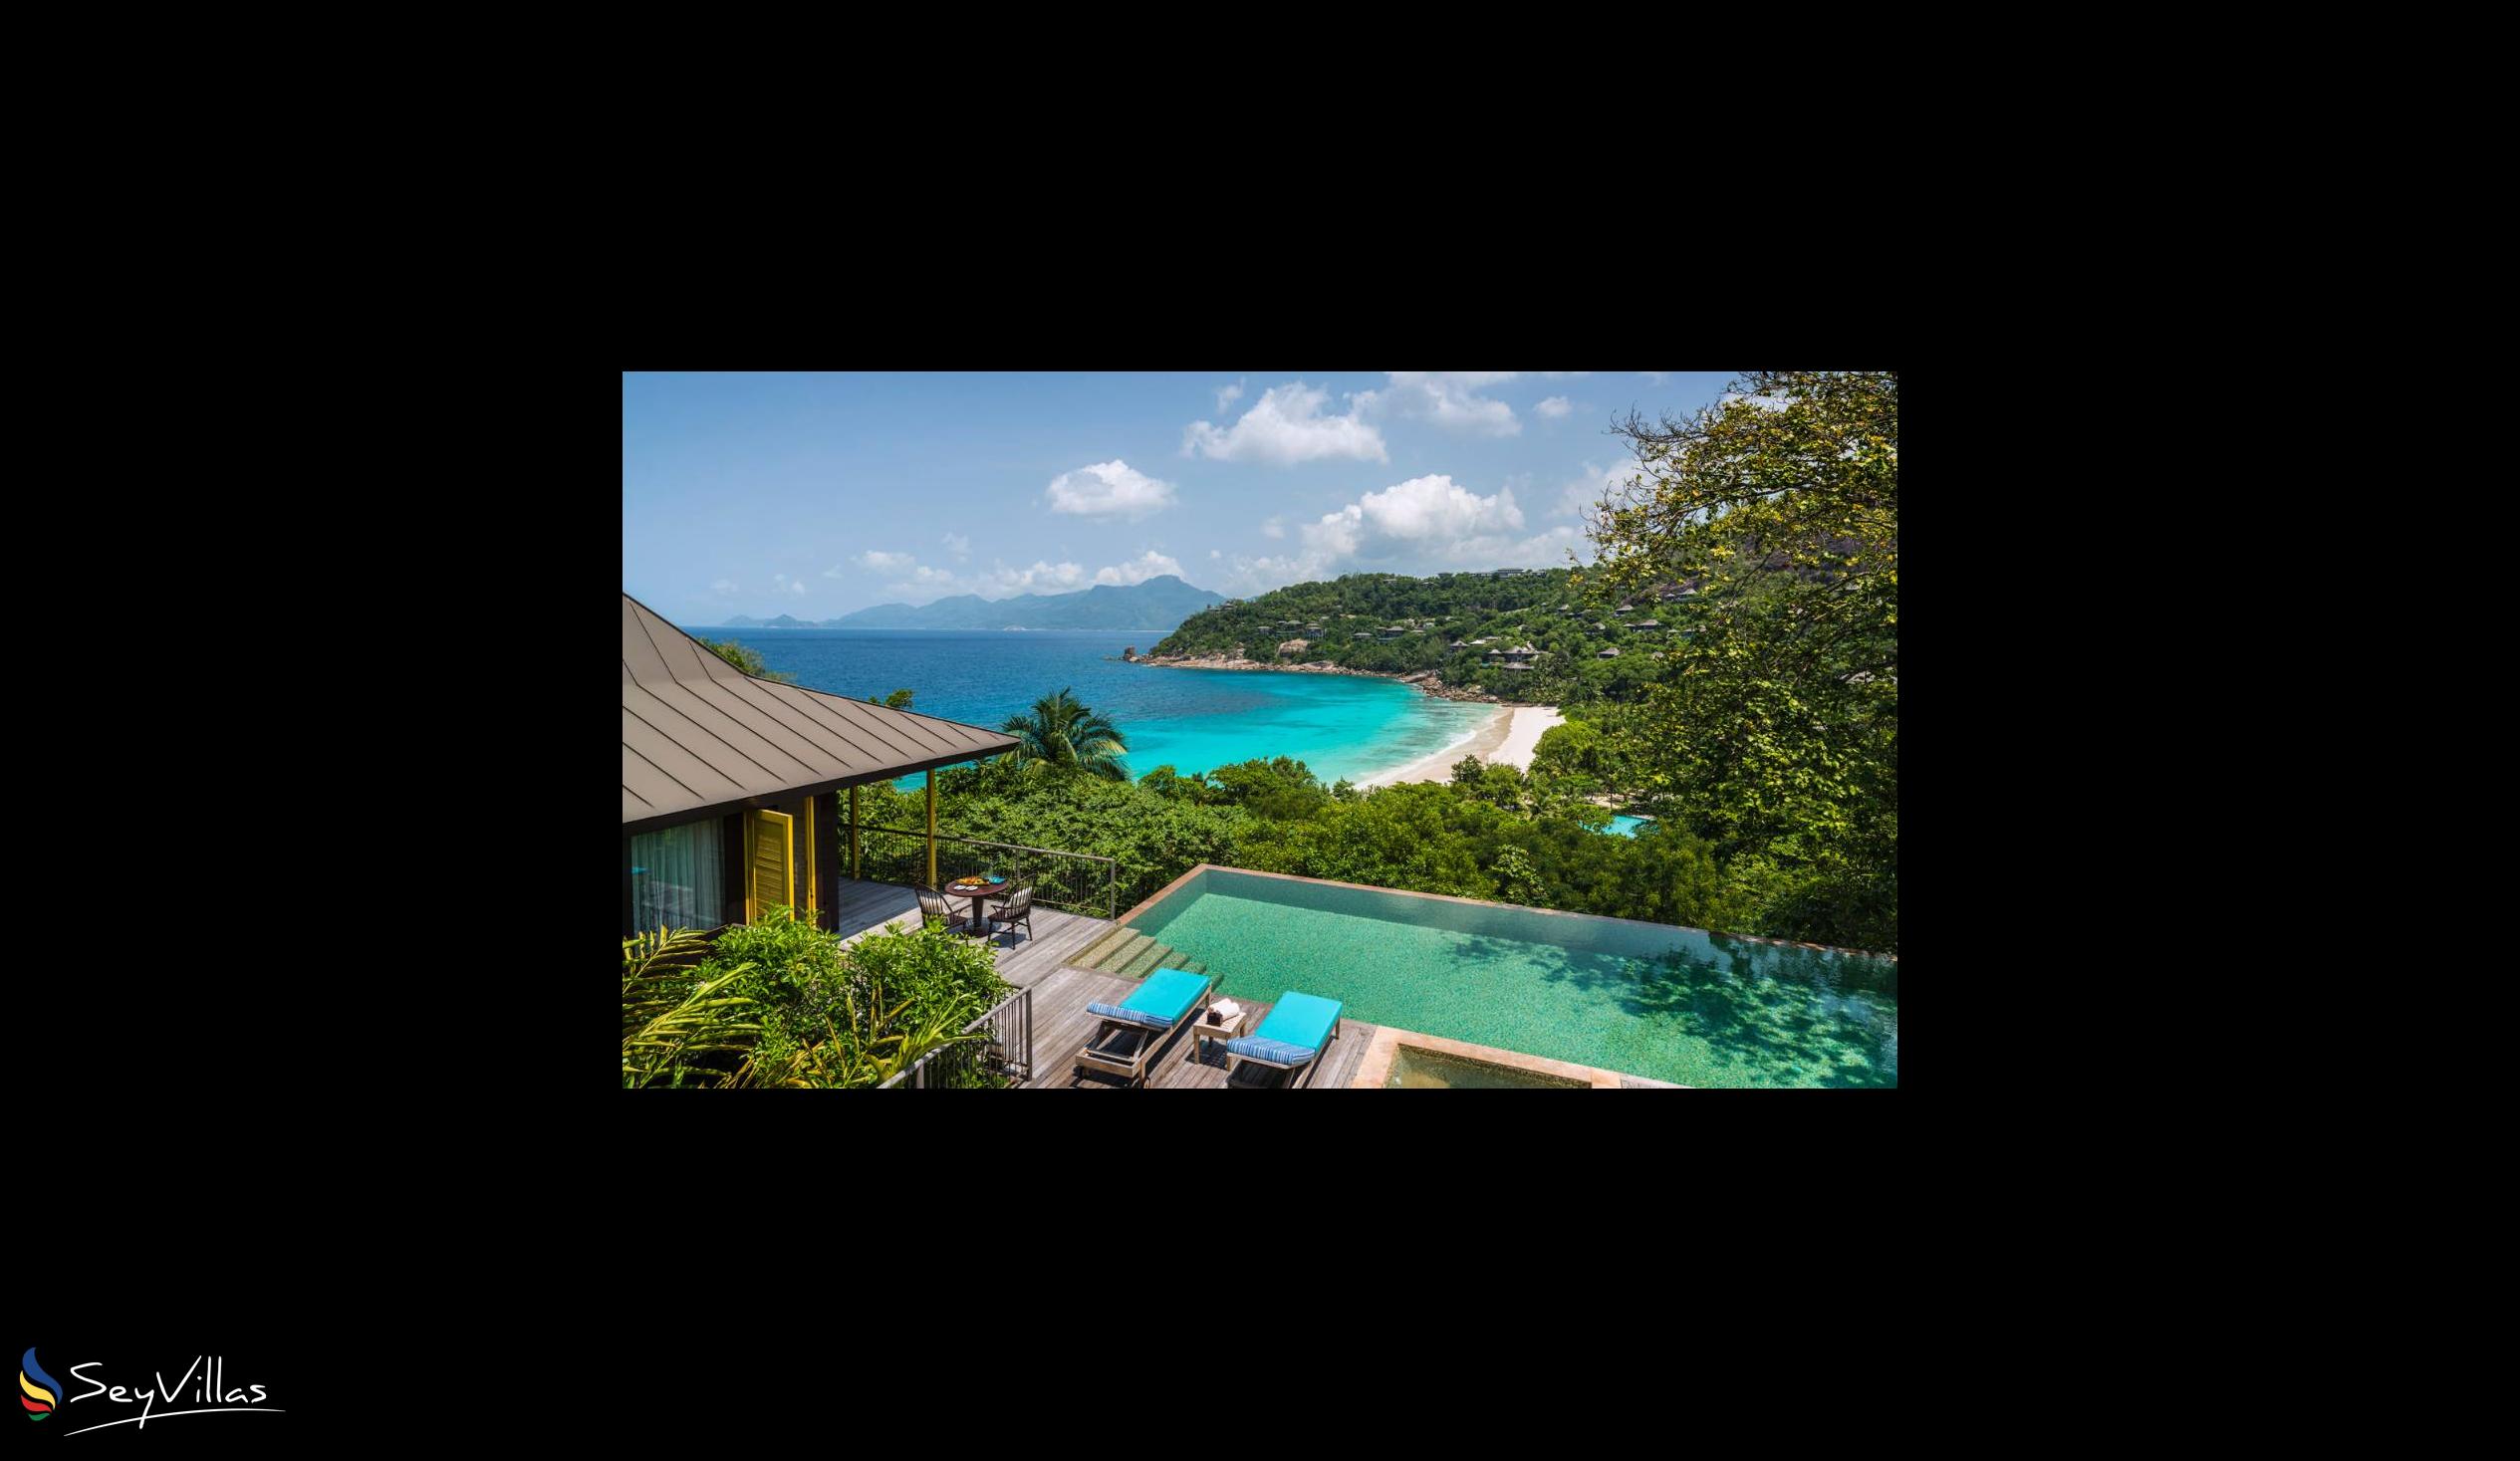 Foto 48: Four Seasons Resort - 2-Bedroom Ocean View Suite - Mahé (Seychelles)